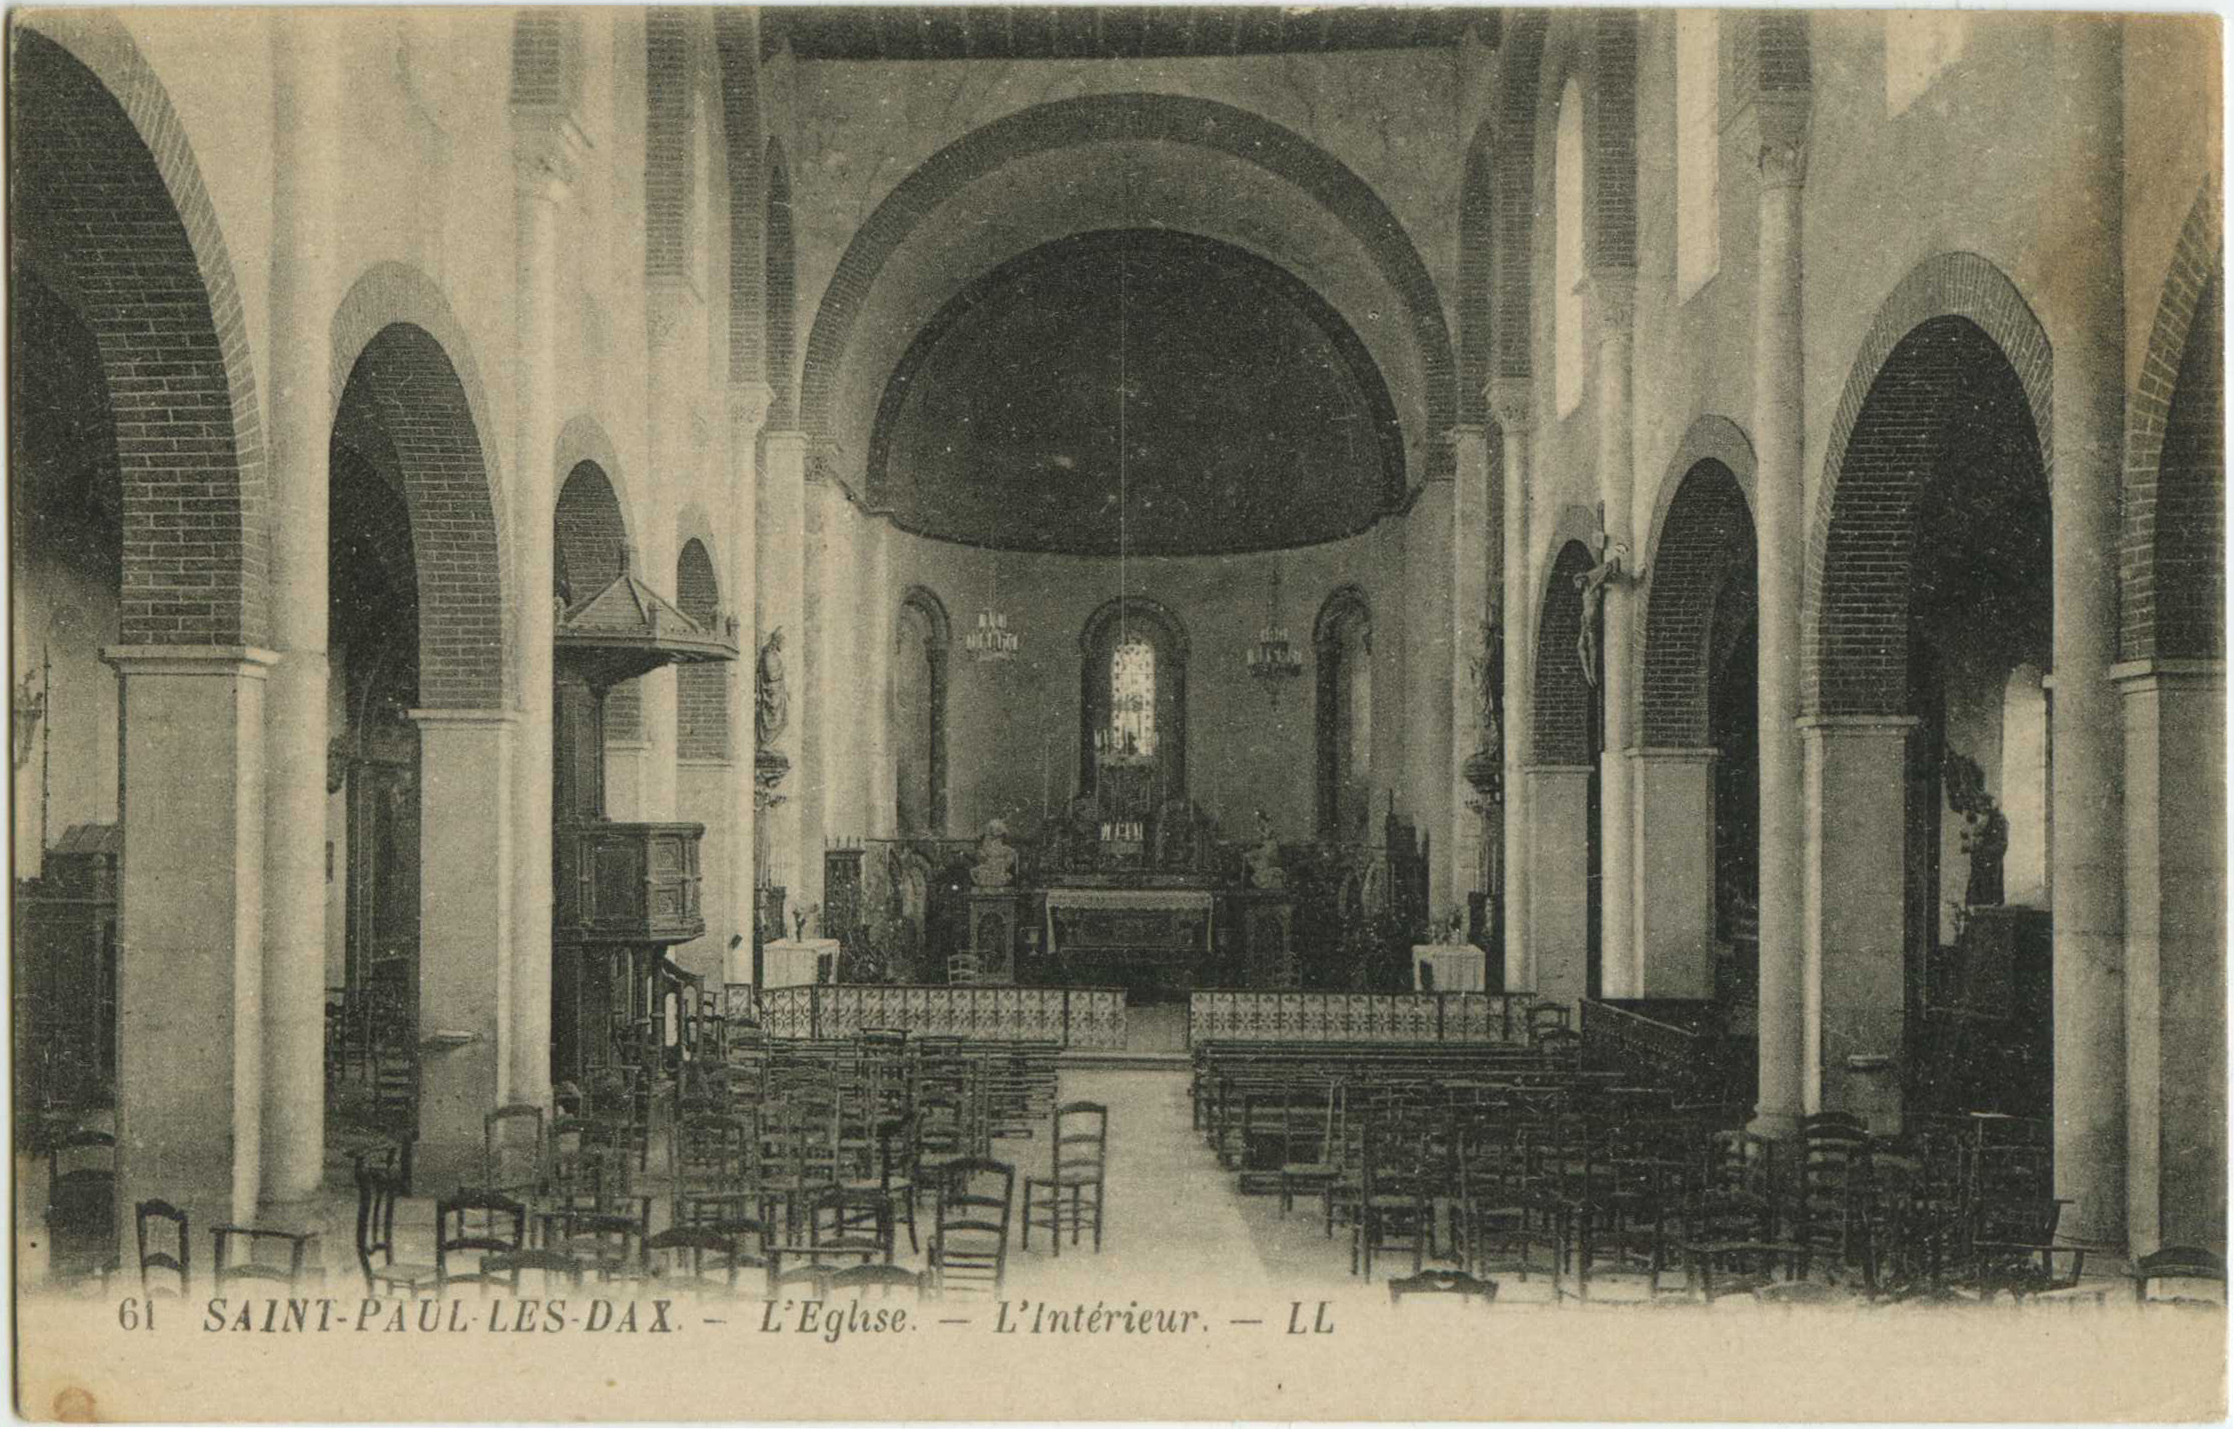 Saint-Paul-lès-Dax - L'Eglise - L'Intérieur